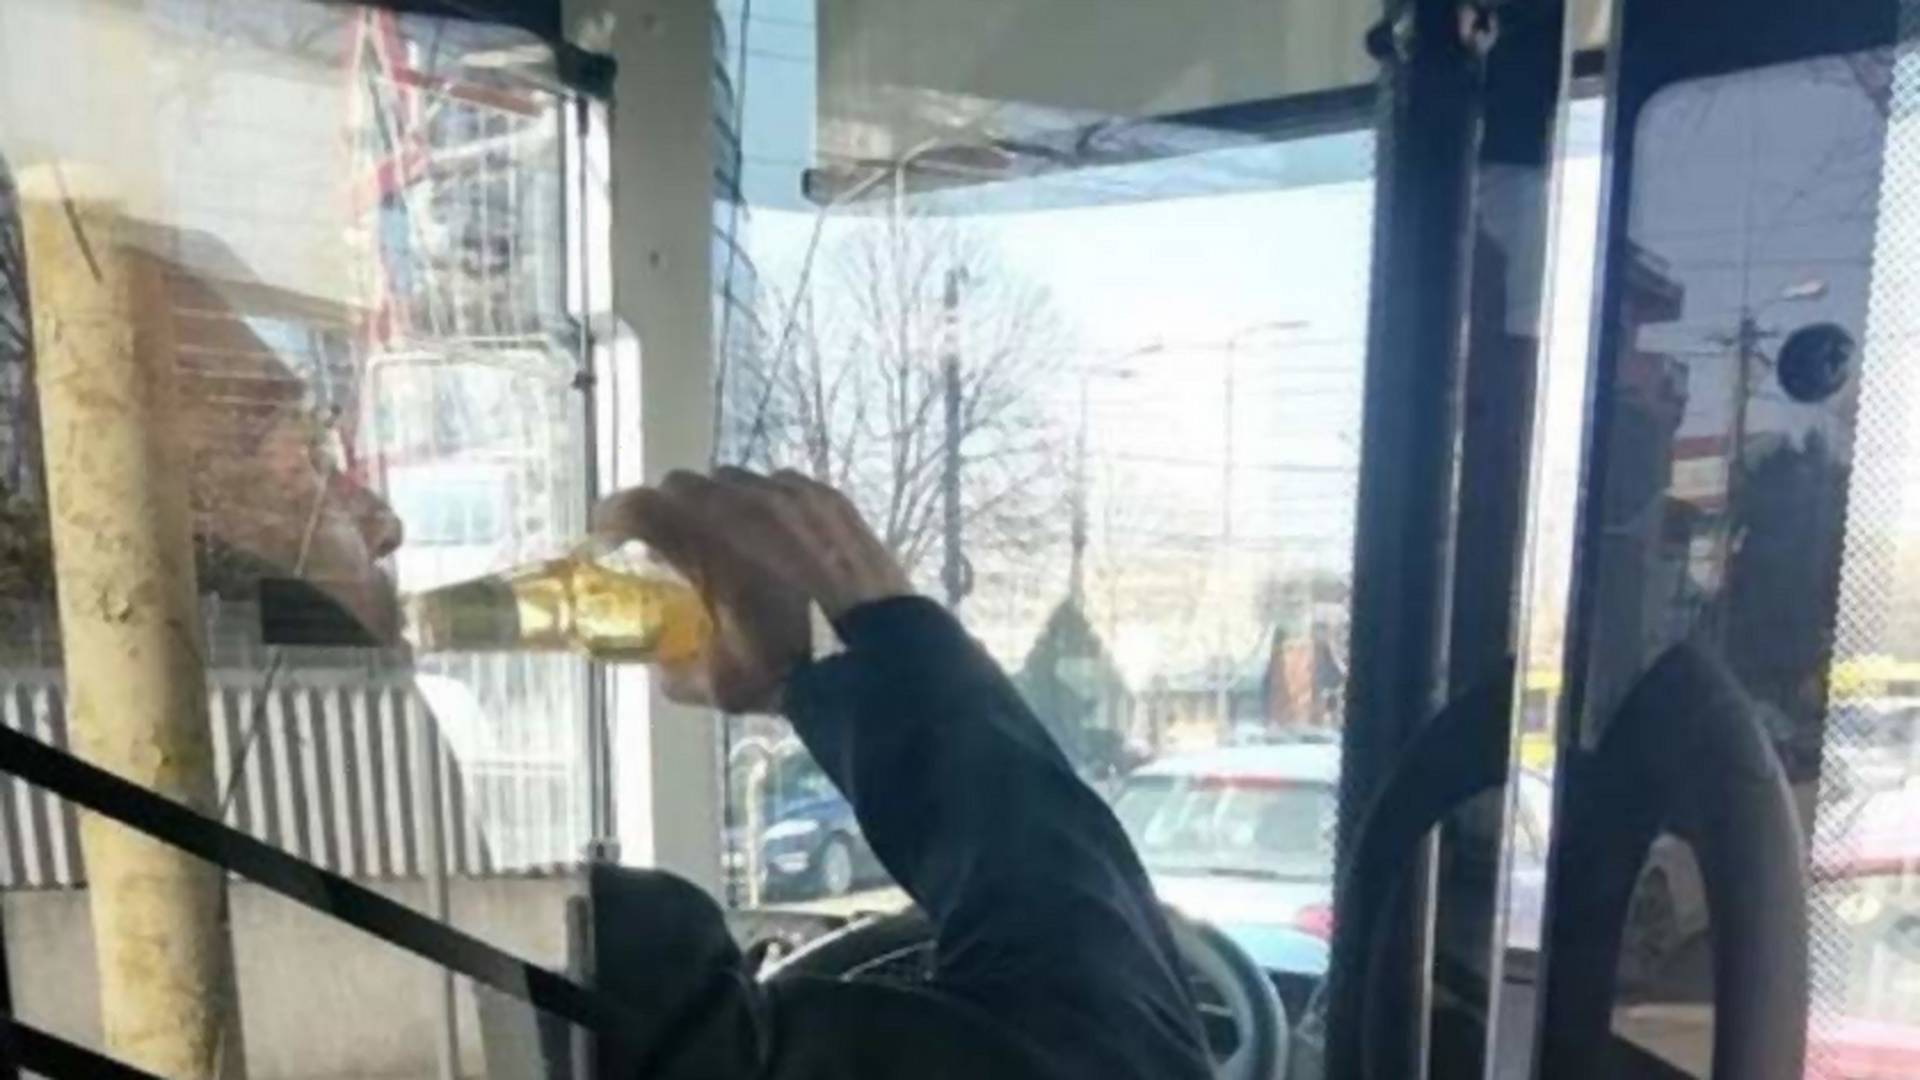 Elképesztő! Az utasok szeme láttára ivott alkoholt a buszsofőr vezetés közben